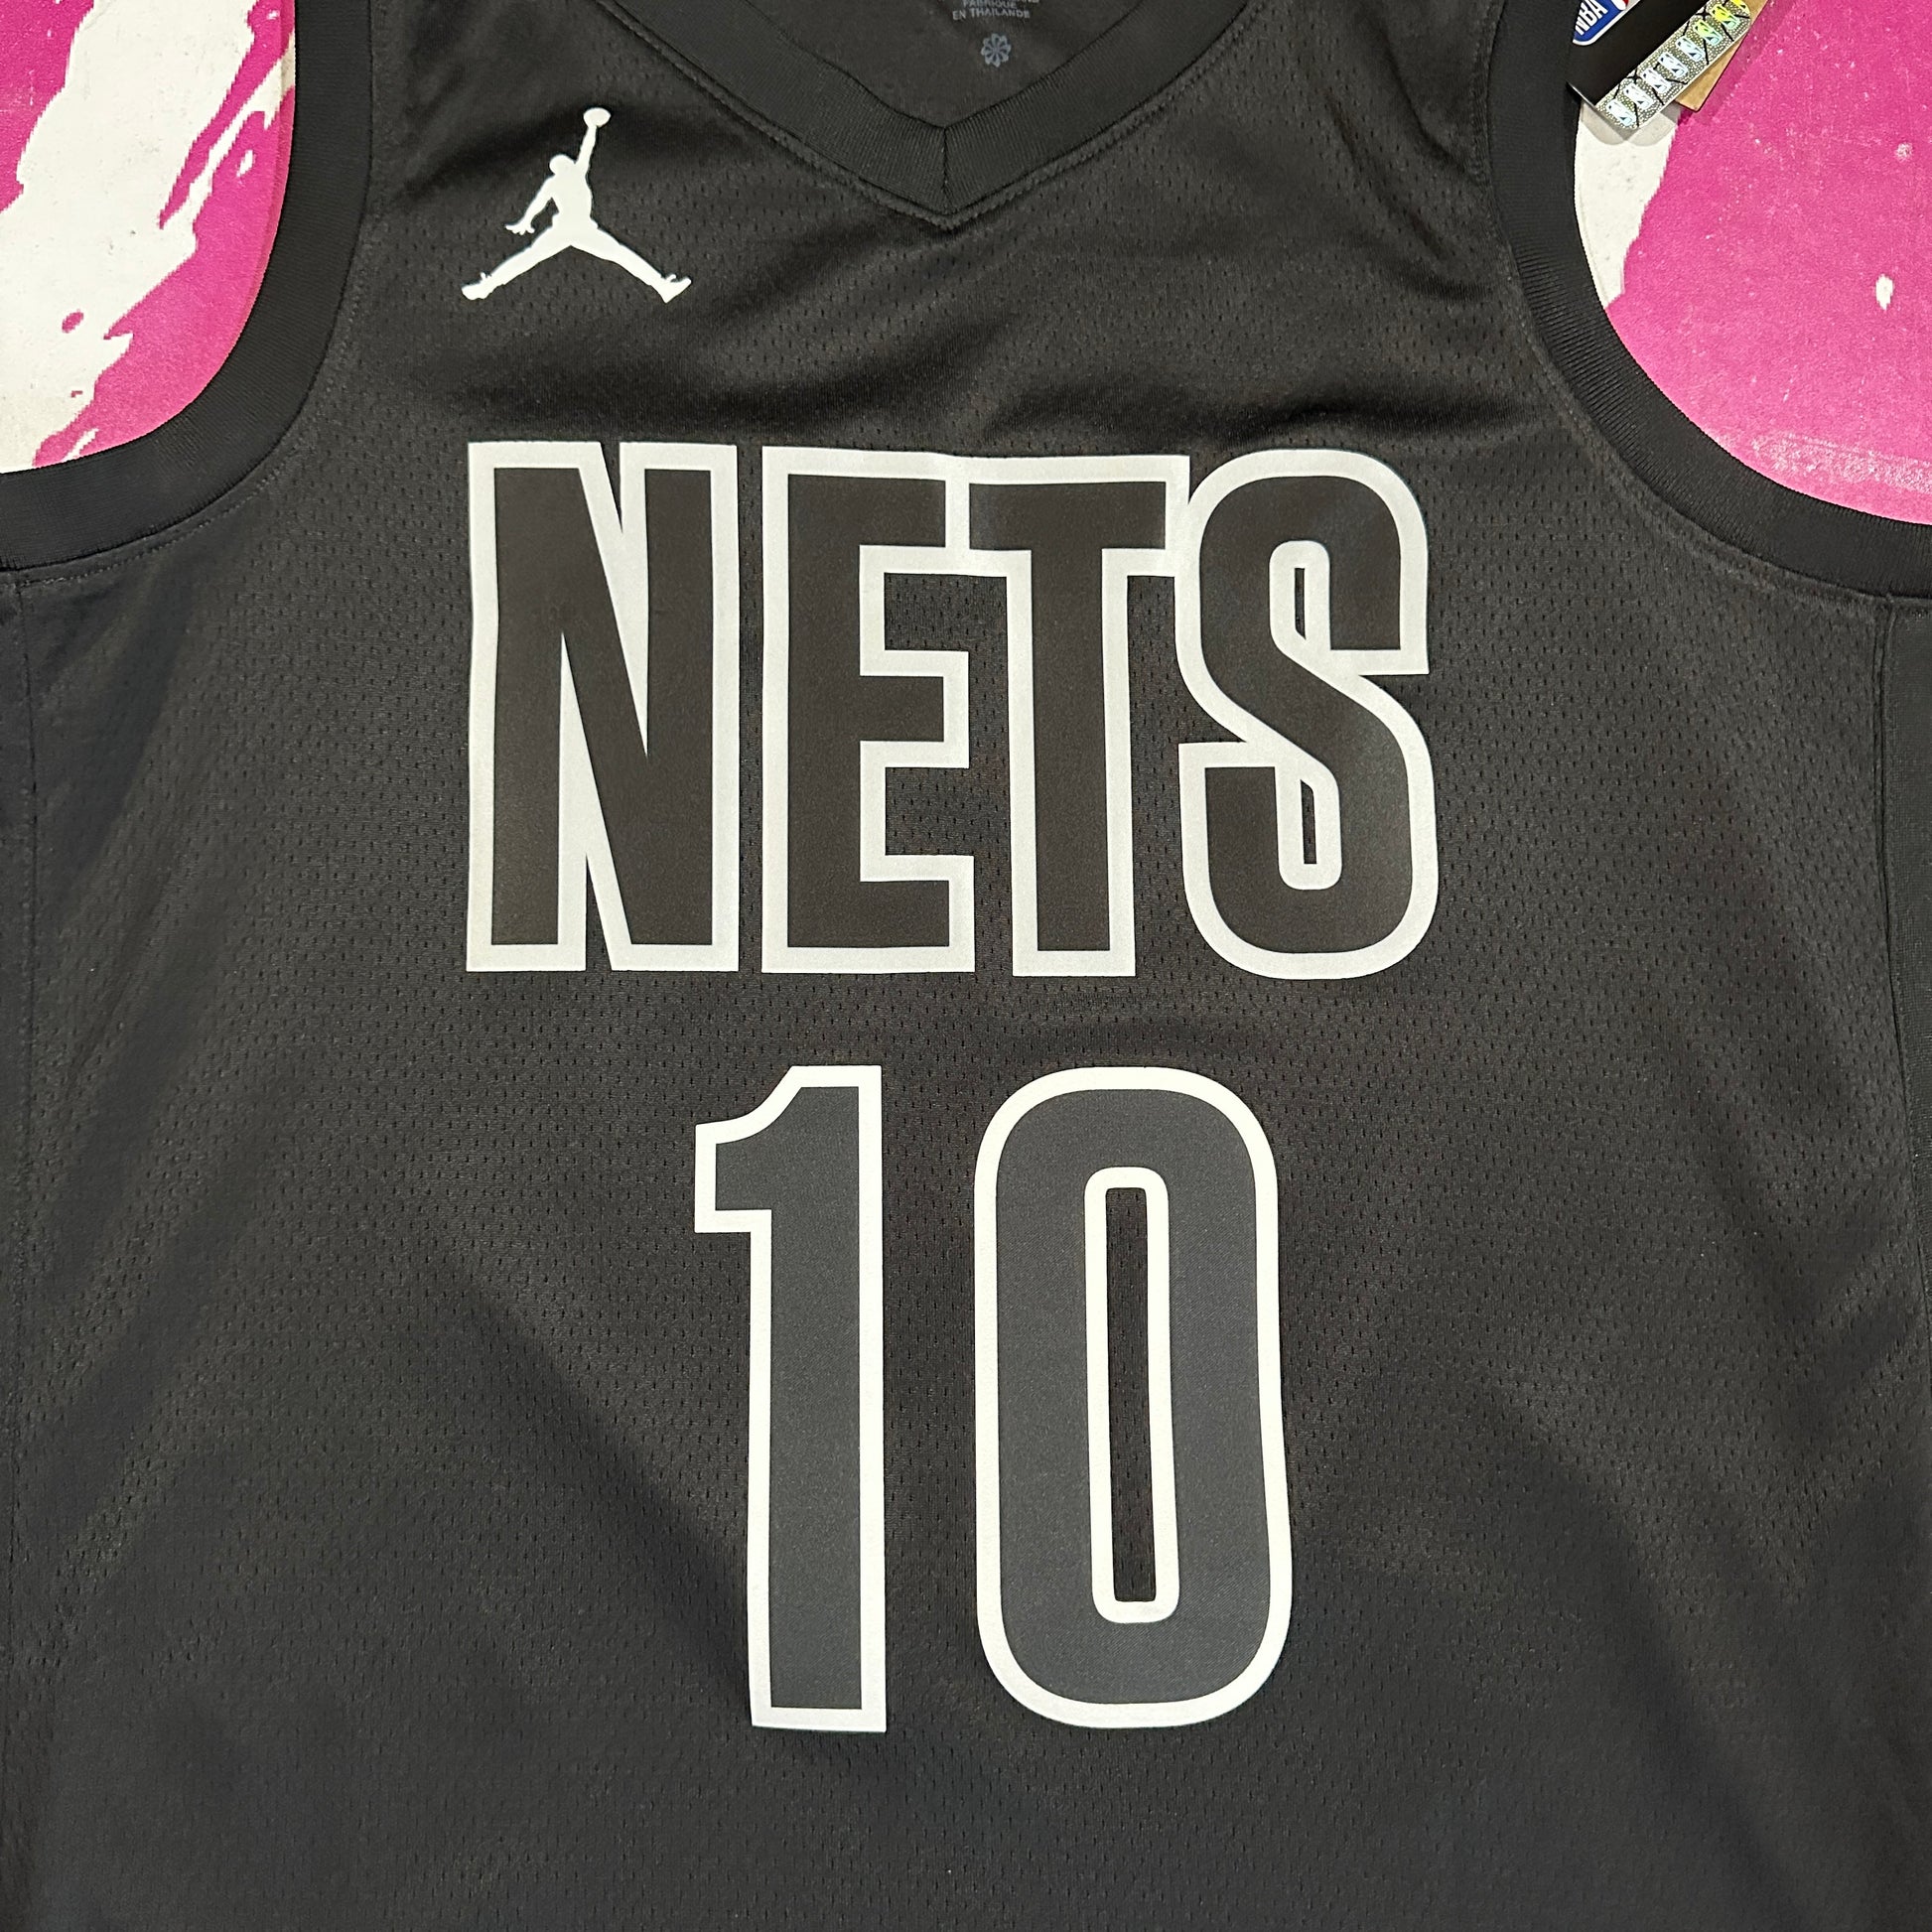 Brooklyn Nets Jordan Statement Edition Swingman Jersey 22 - Black